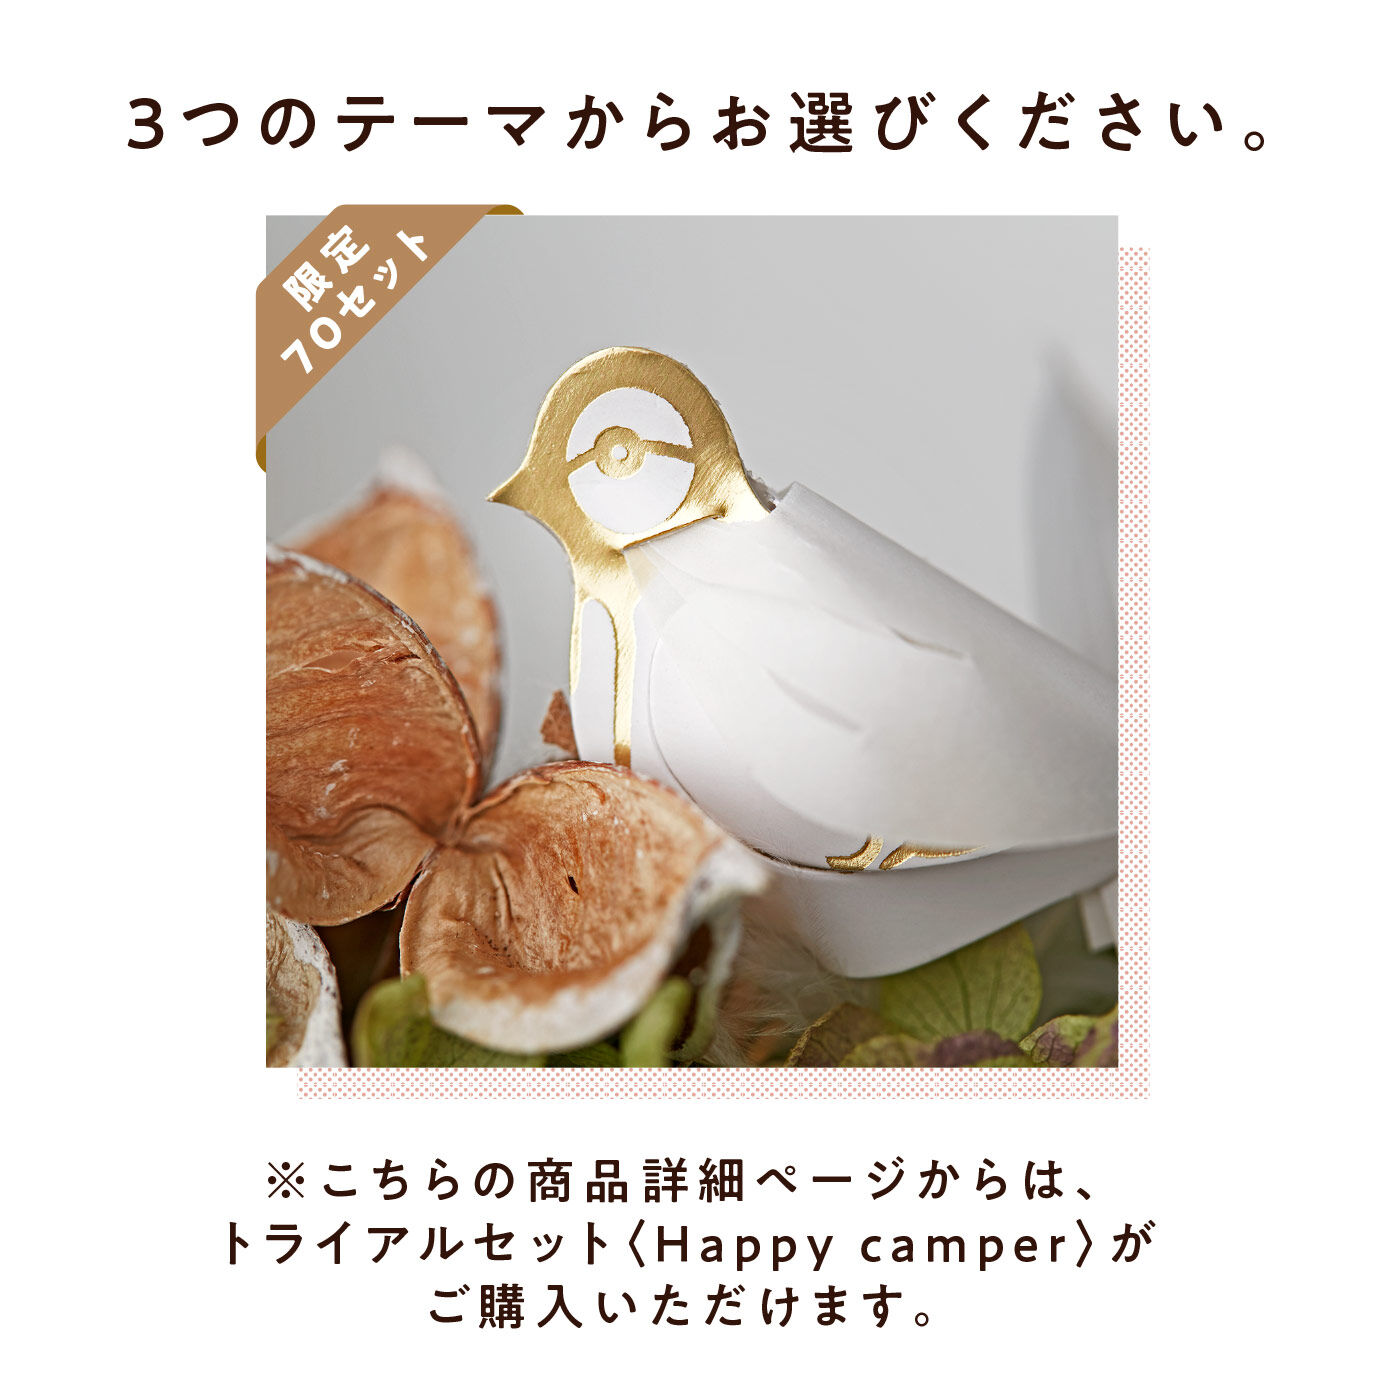 フェリシモコレクション|トライアルセット〈Happy camper〉